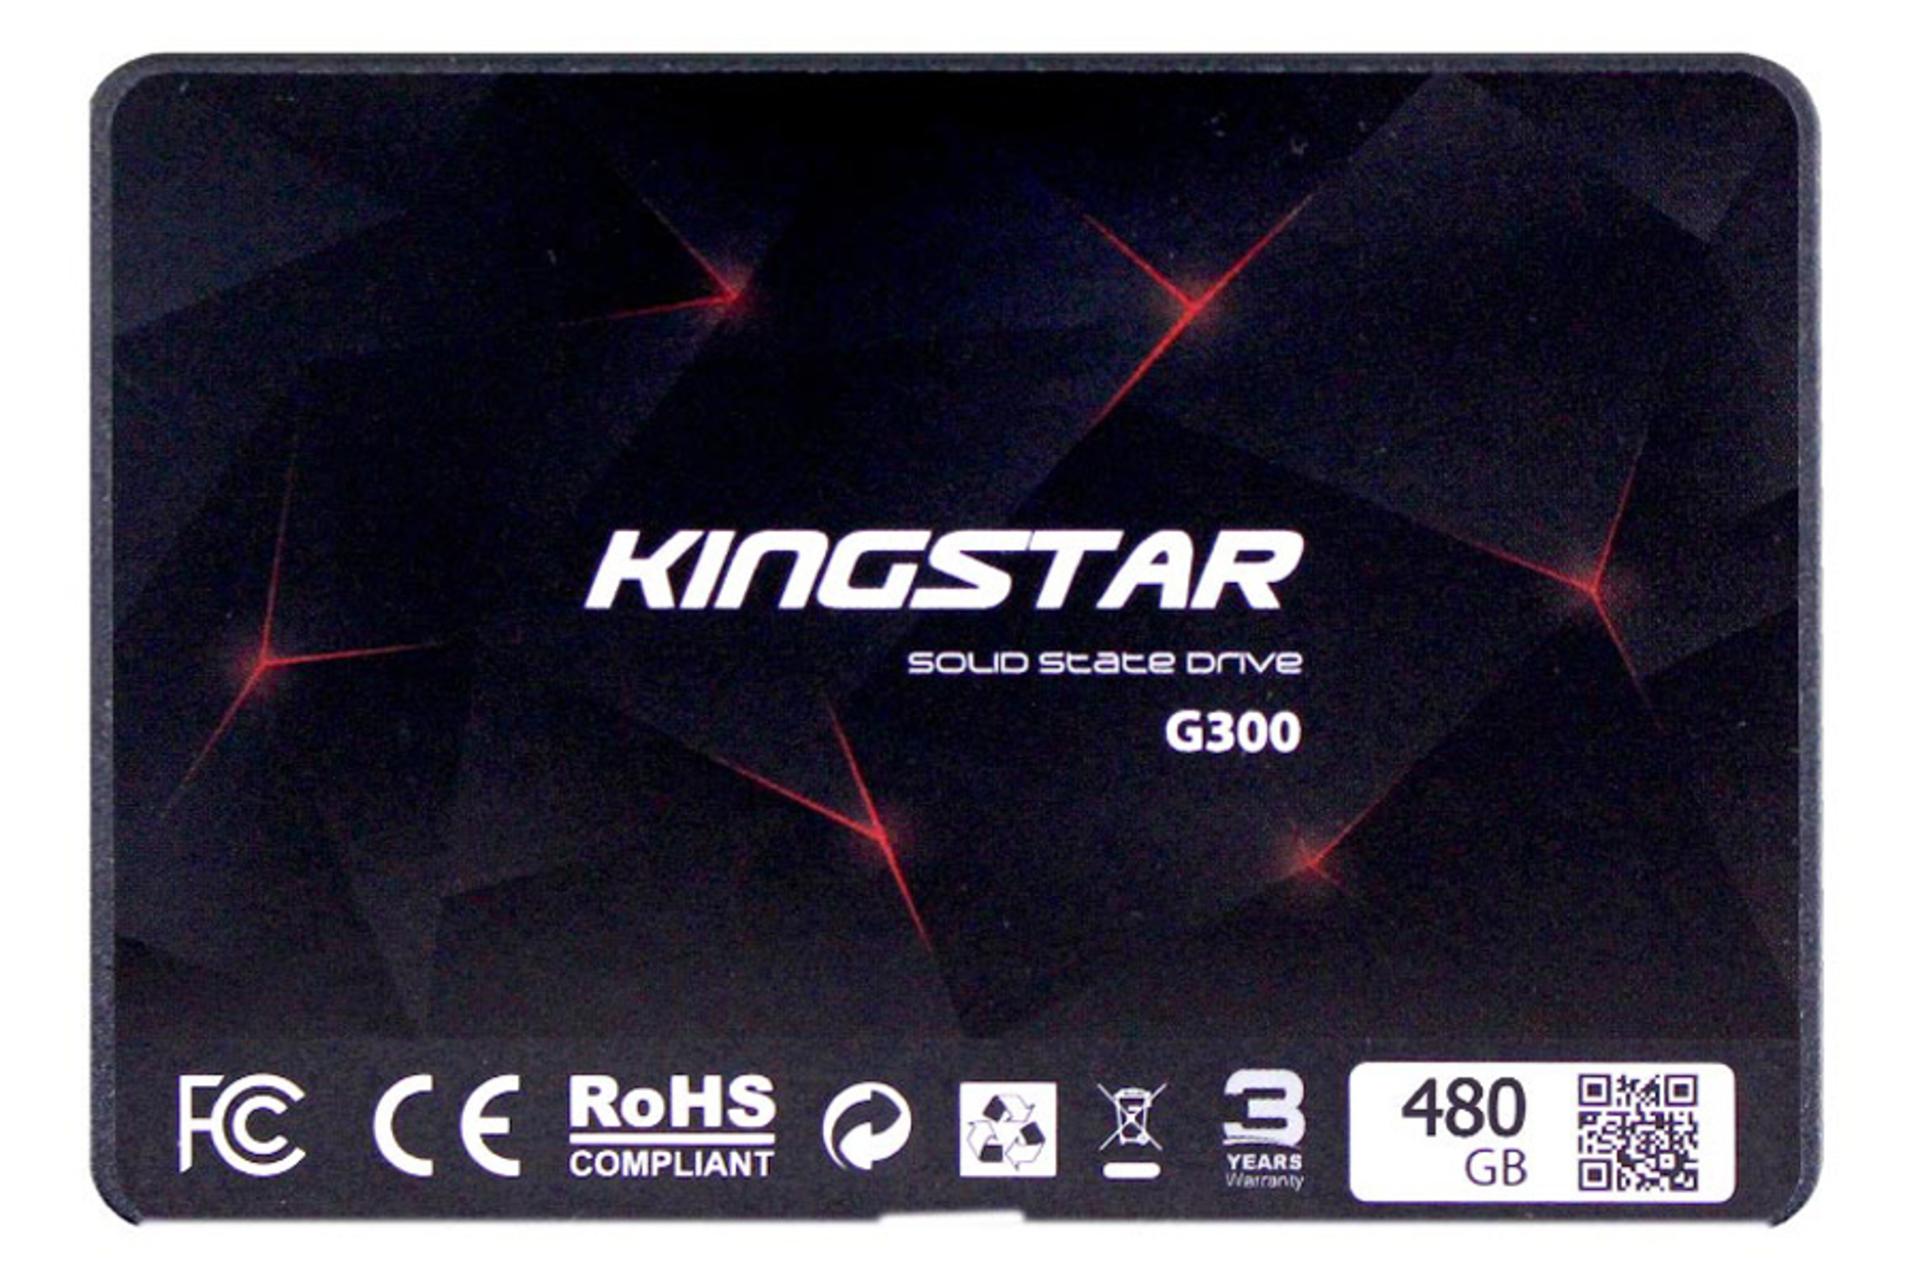 کینگ استار G300 SATA 2.5 Inch ظرفیت 480 گیگابایت